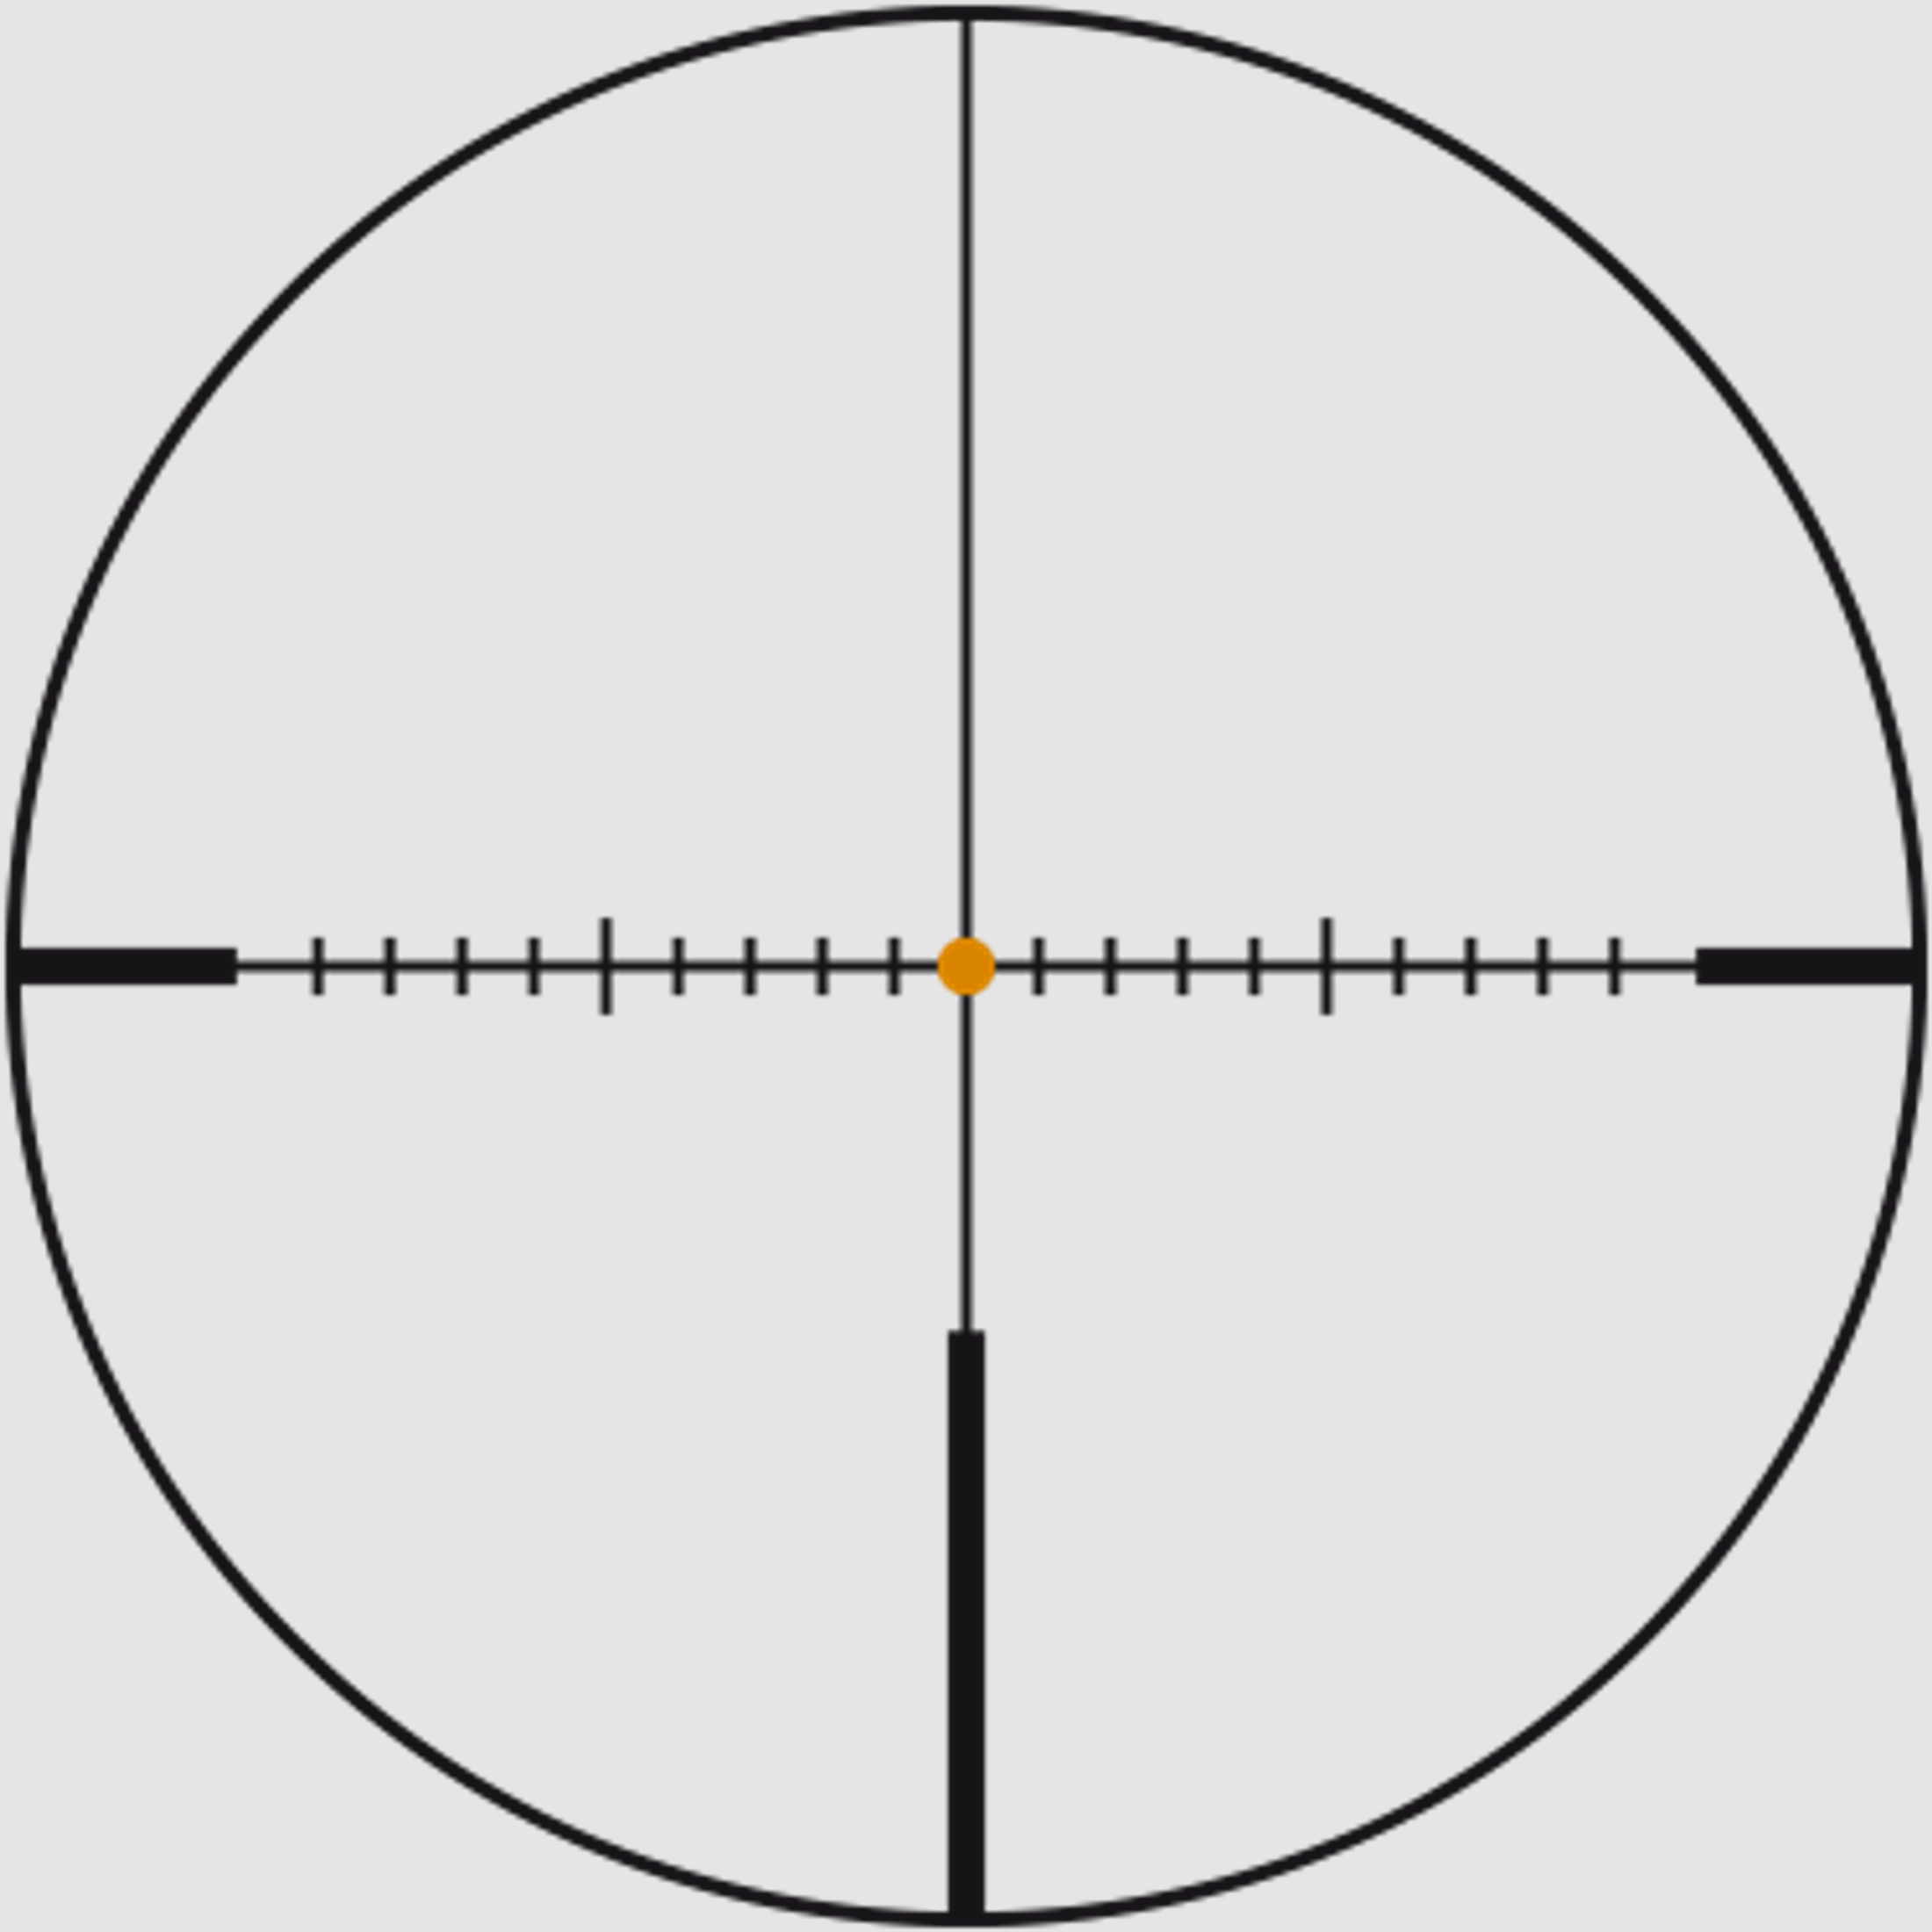 SWAROVSKI Zielfernrohr mit Leuchtabsehen 3,5-28x50 P Z8i L (30mm) Abs. 4A-I/4W-I/BRX-i